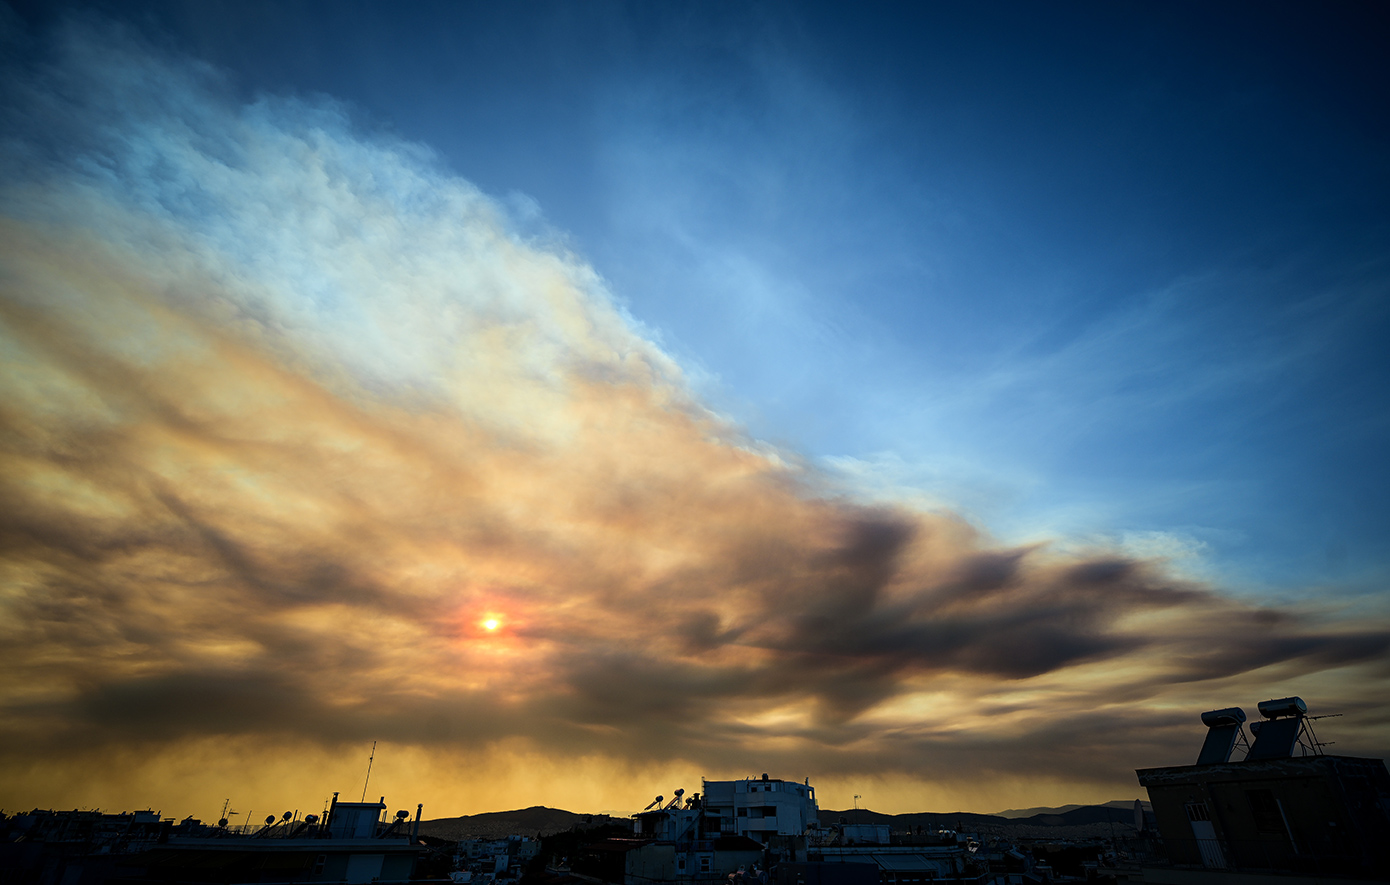 Ο μαύρος καπνός από τις φωτιές στην Εύβοια σκέπασε τον ουρανό της Αττικής – Γιγατόνοι άνθρακα εκλύονται στην ατμόσφαιρα